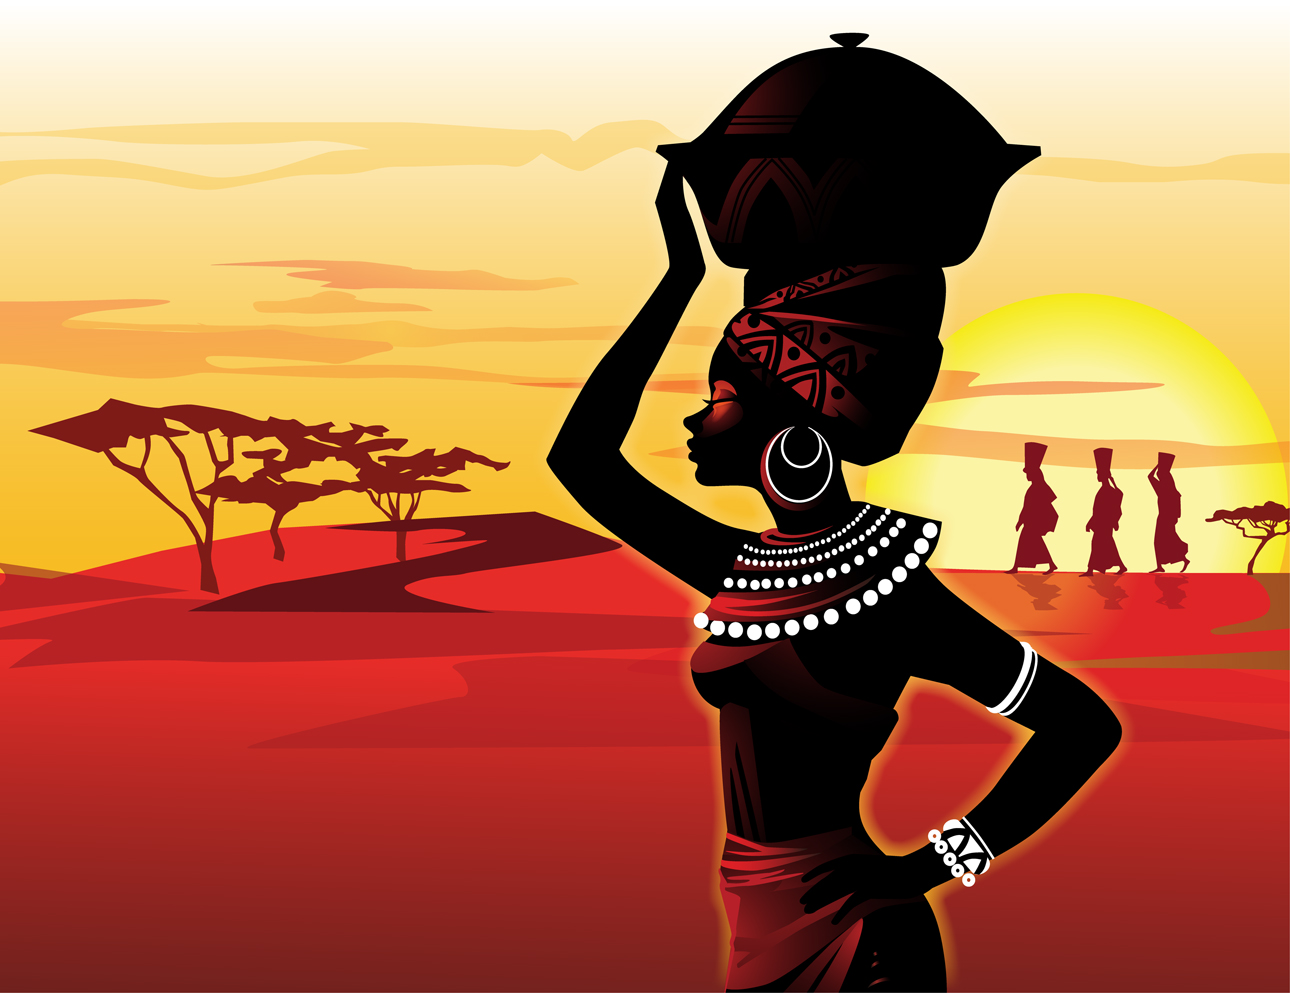 afrikanische königin tapete,illustration,tanzen,fotografie,grafikdesign,straßentanz